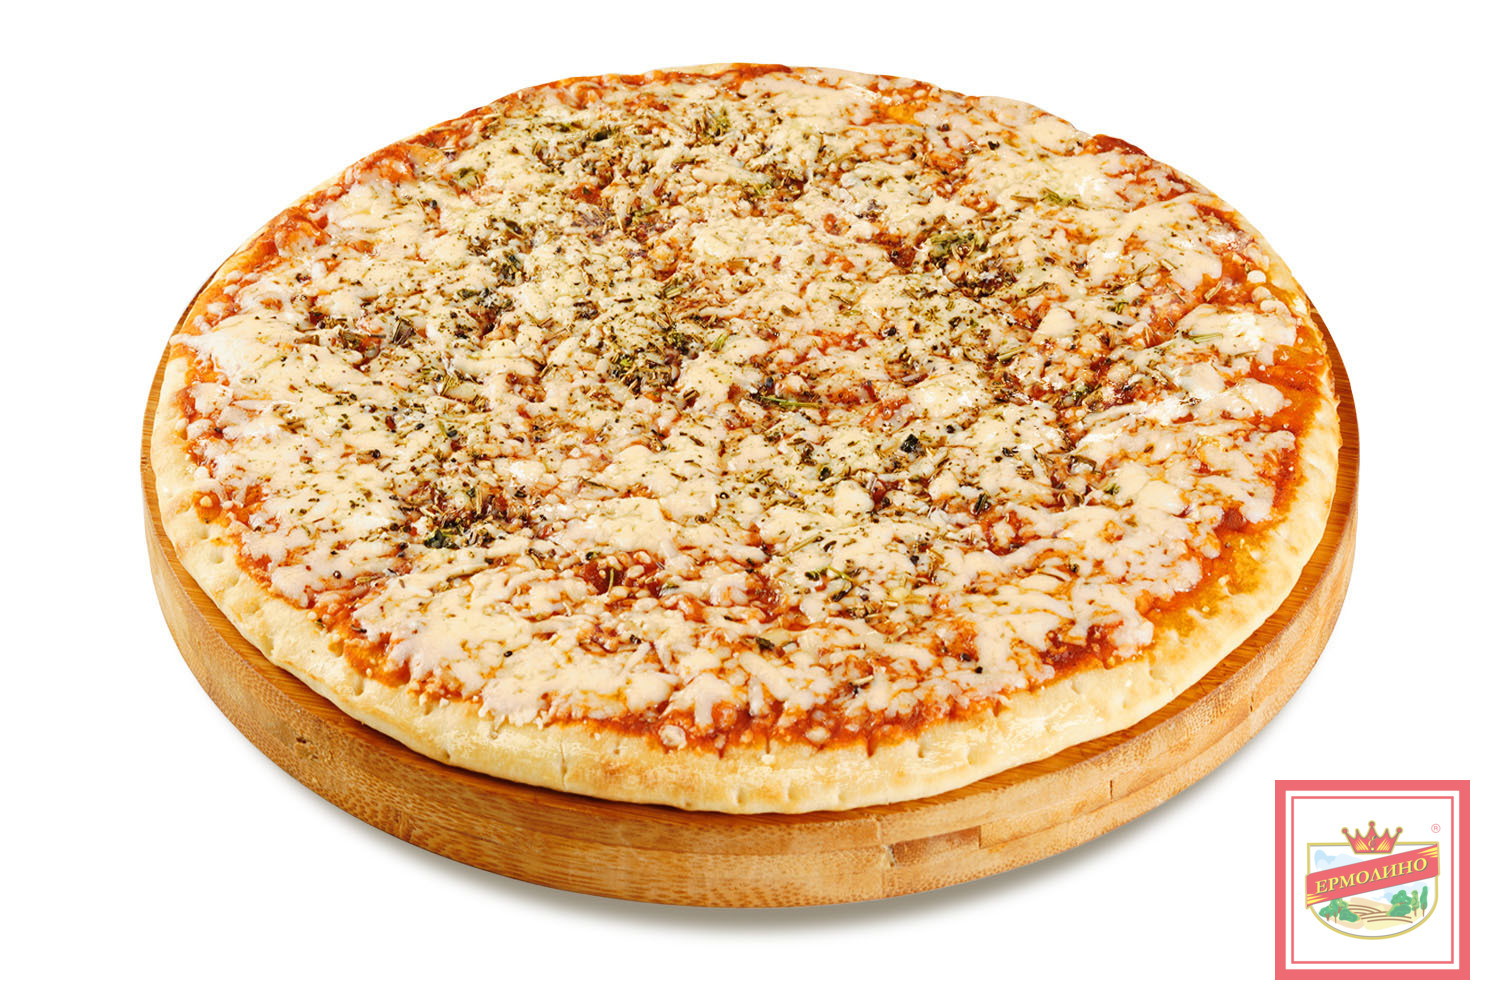 глаголевская пицца купино ассортимент и цены фото 33